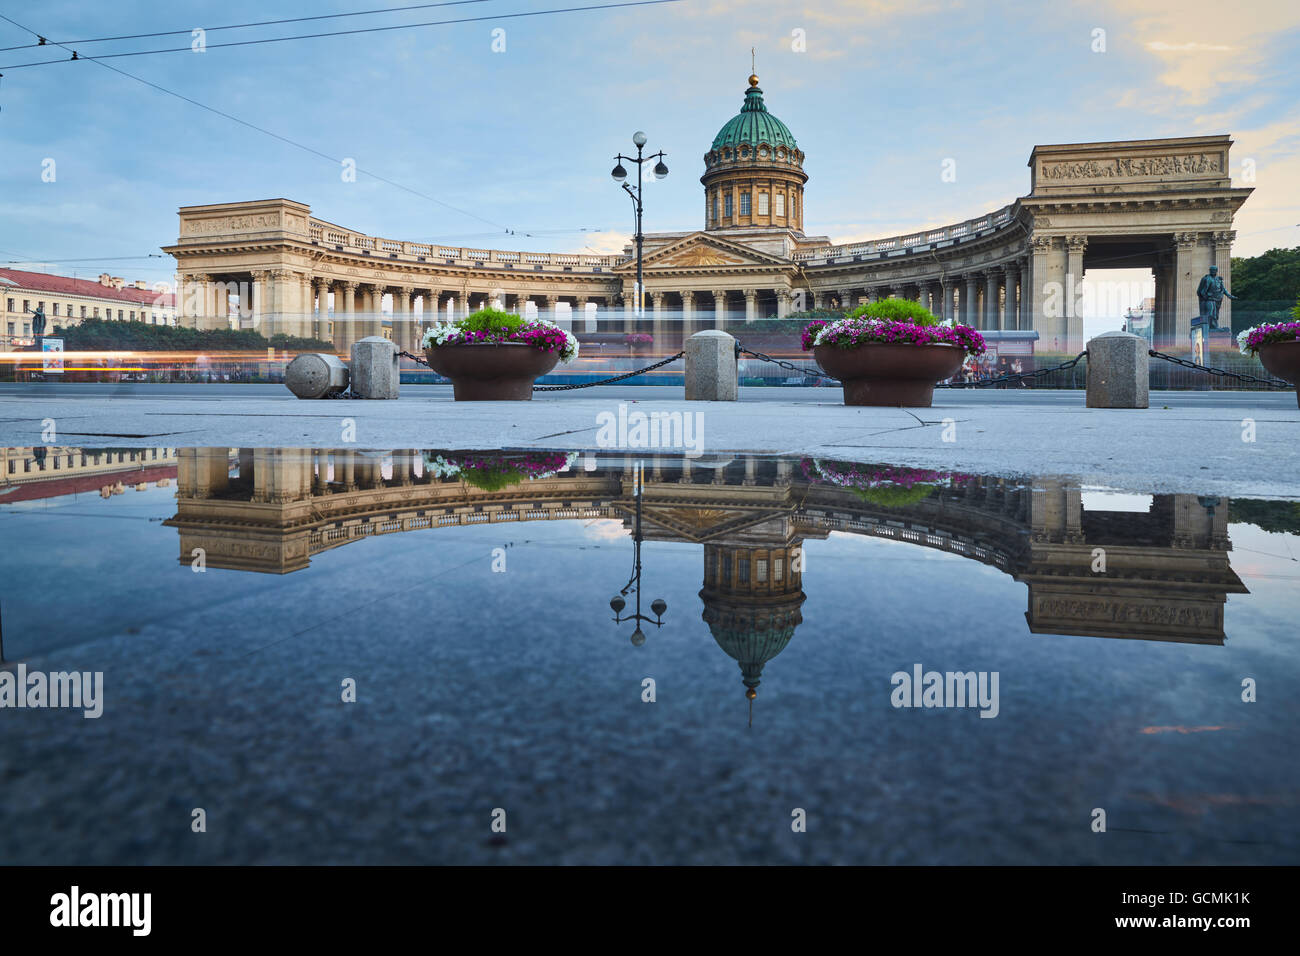 La Russie, Saint-Petersbourg, 03 juillet 2016 : Reflet de la Cathédrale de Kazan dans une piscine sur le trottoir de l'avenue Nevsky prospect Banque D'Images